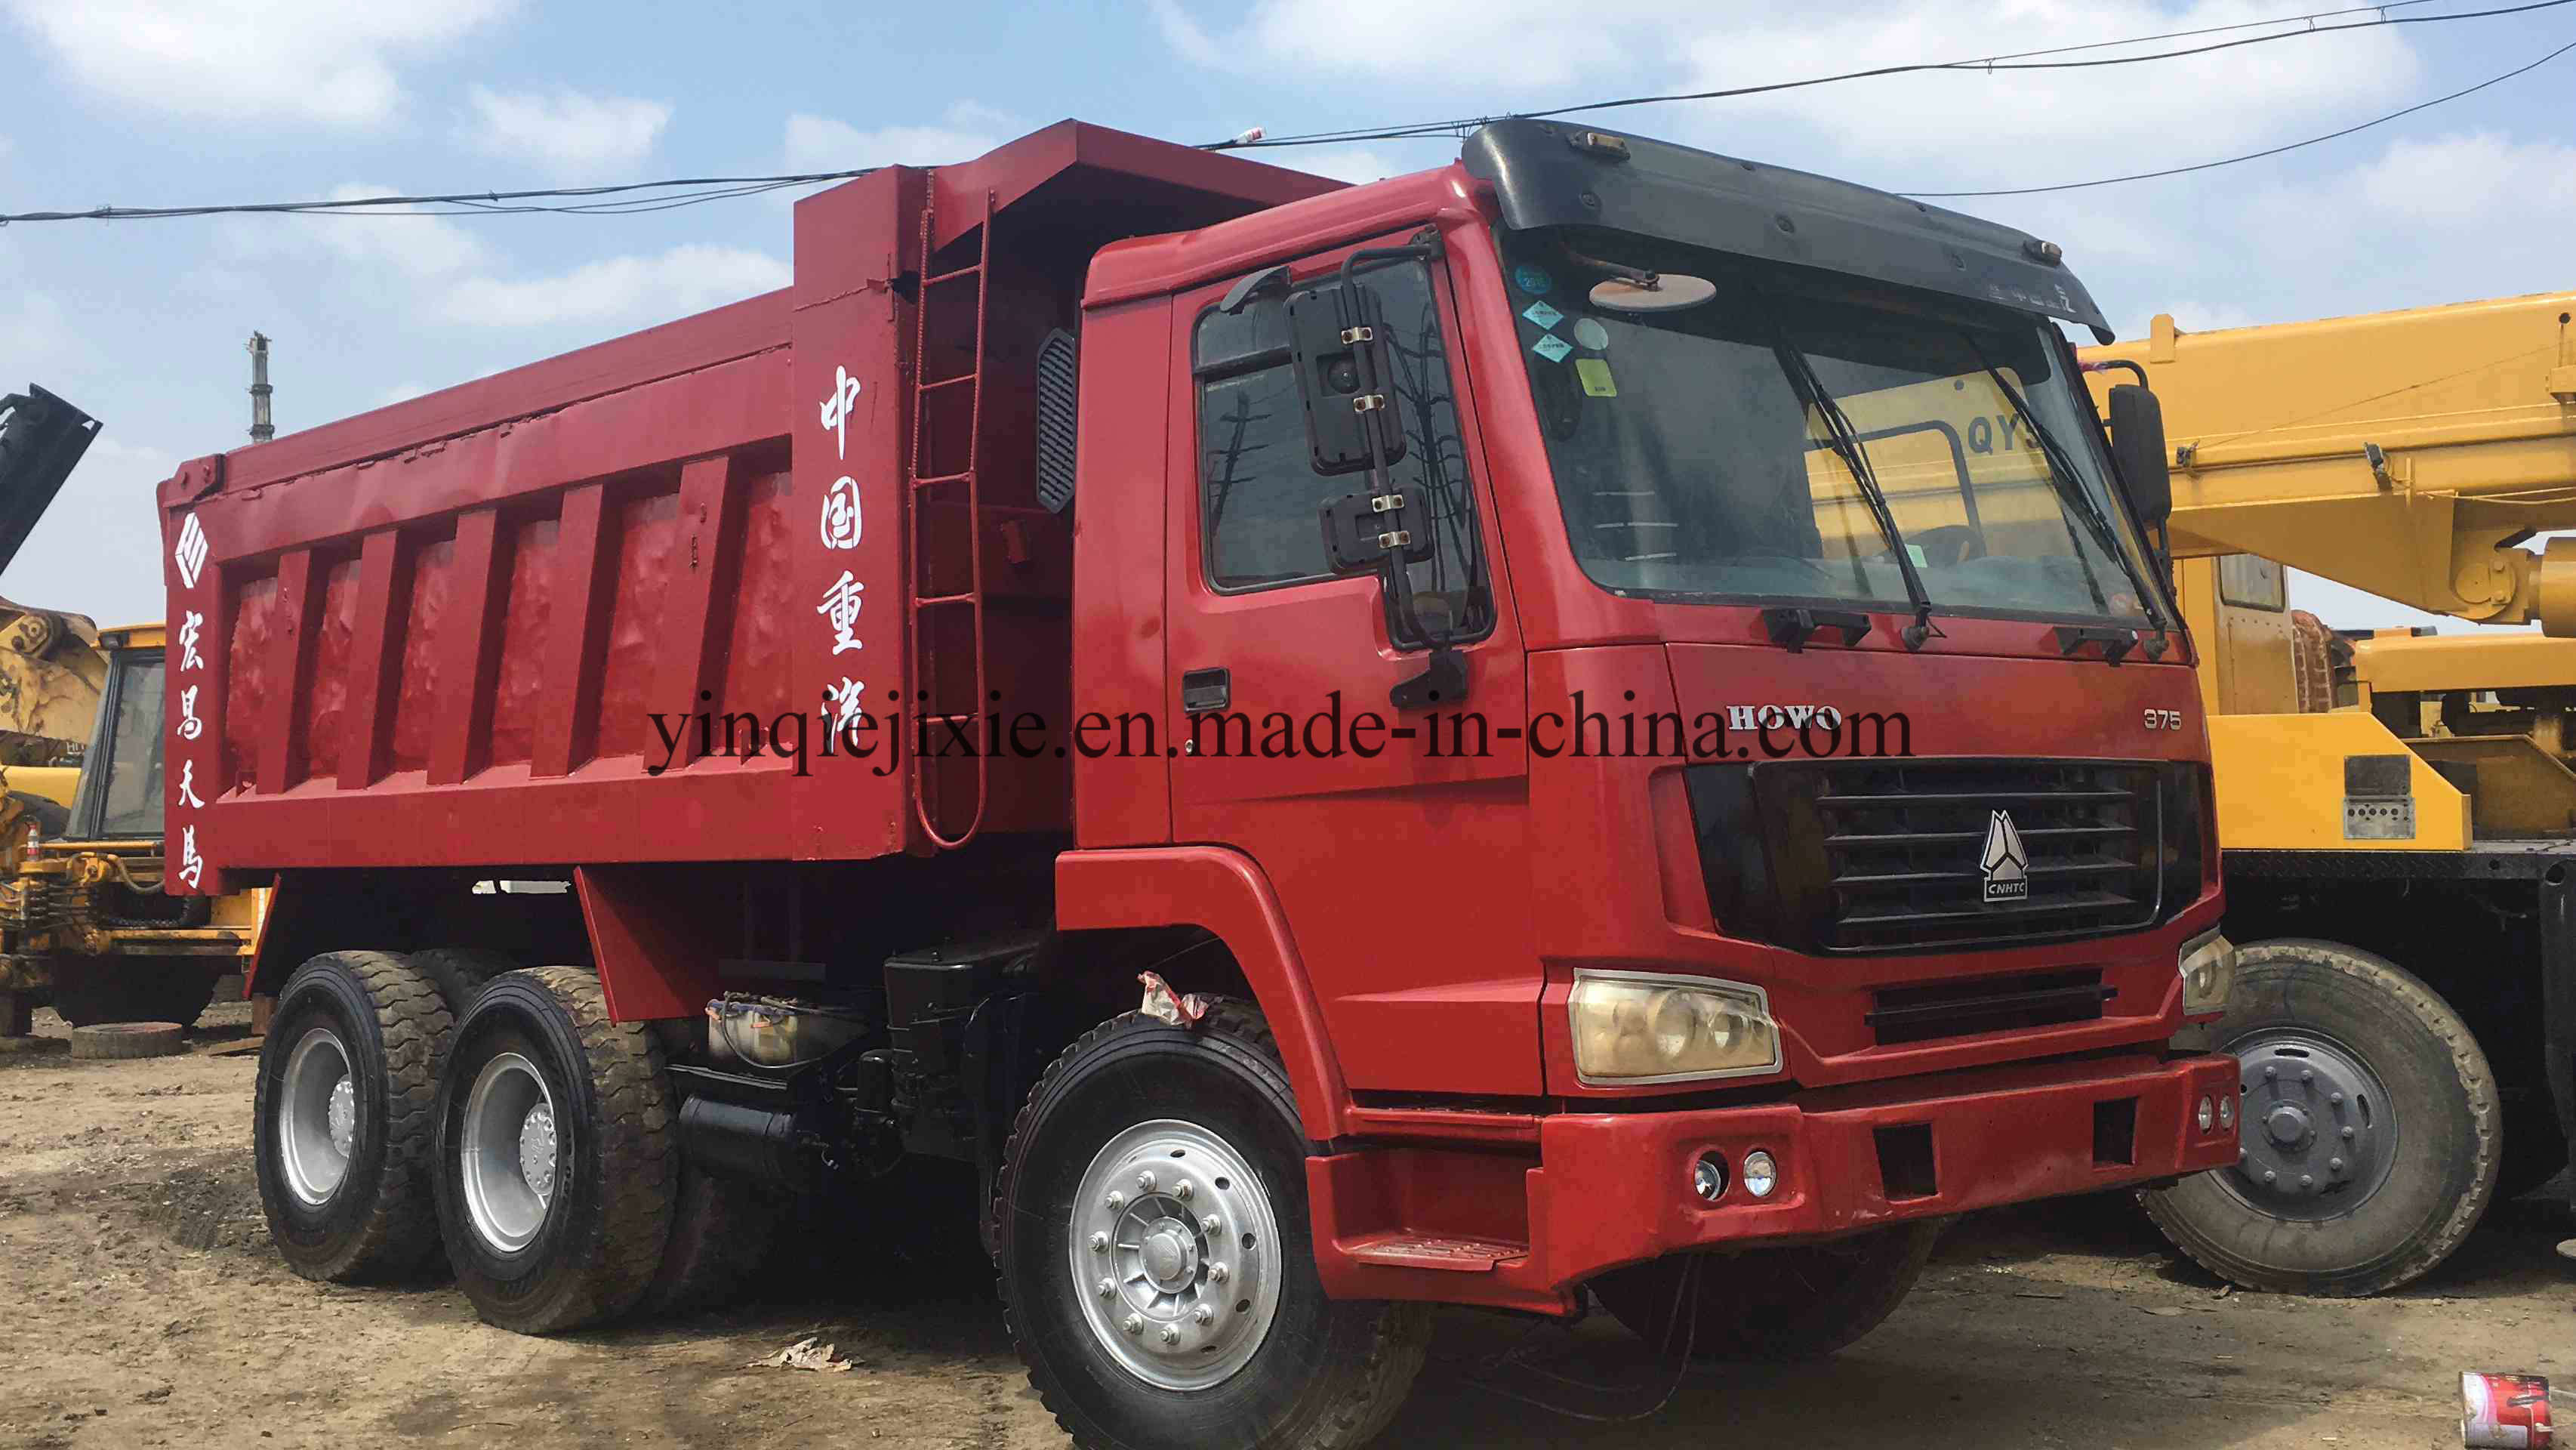 
                Gebruikt HOWO 375 Dump Truck in goede staat van Trust Chinese leverancier
            